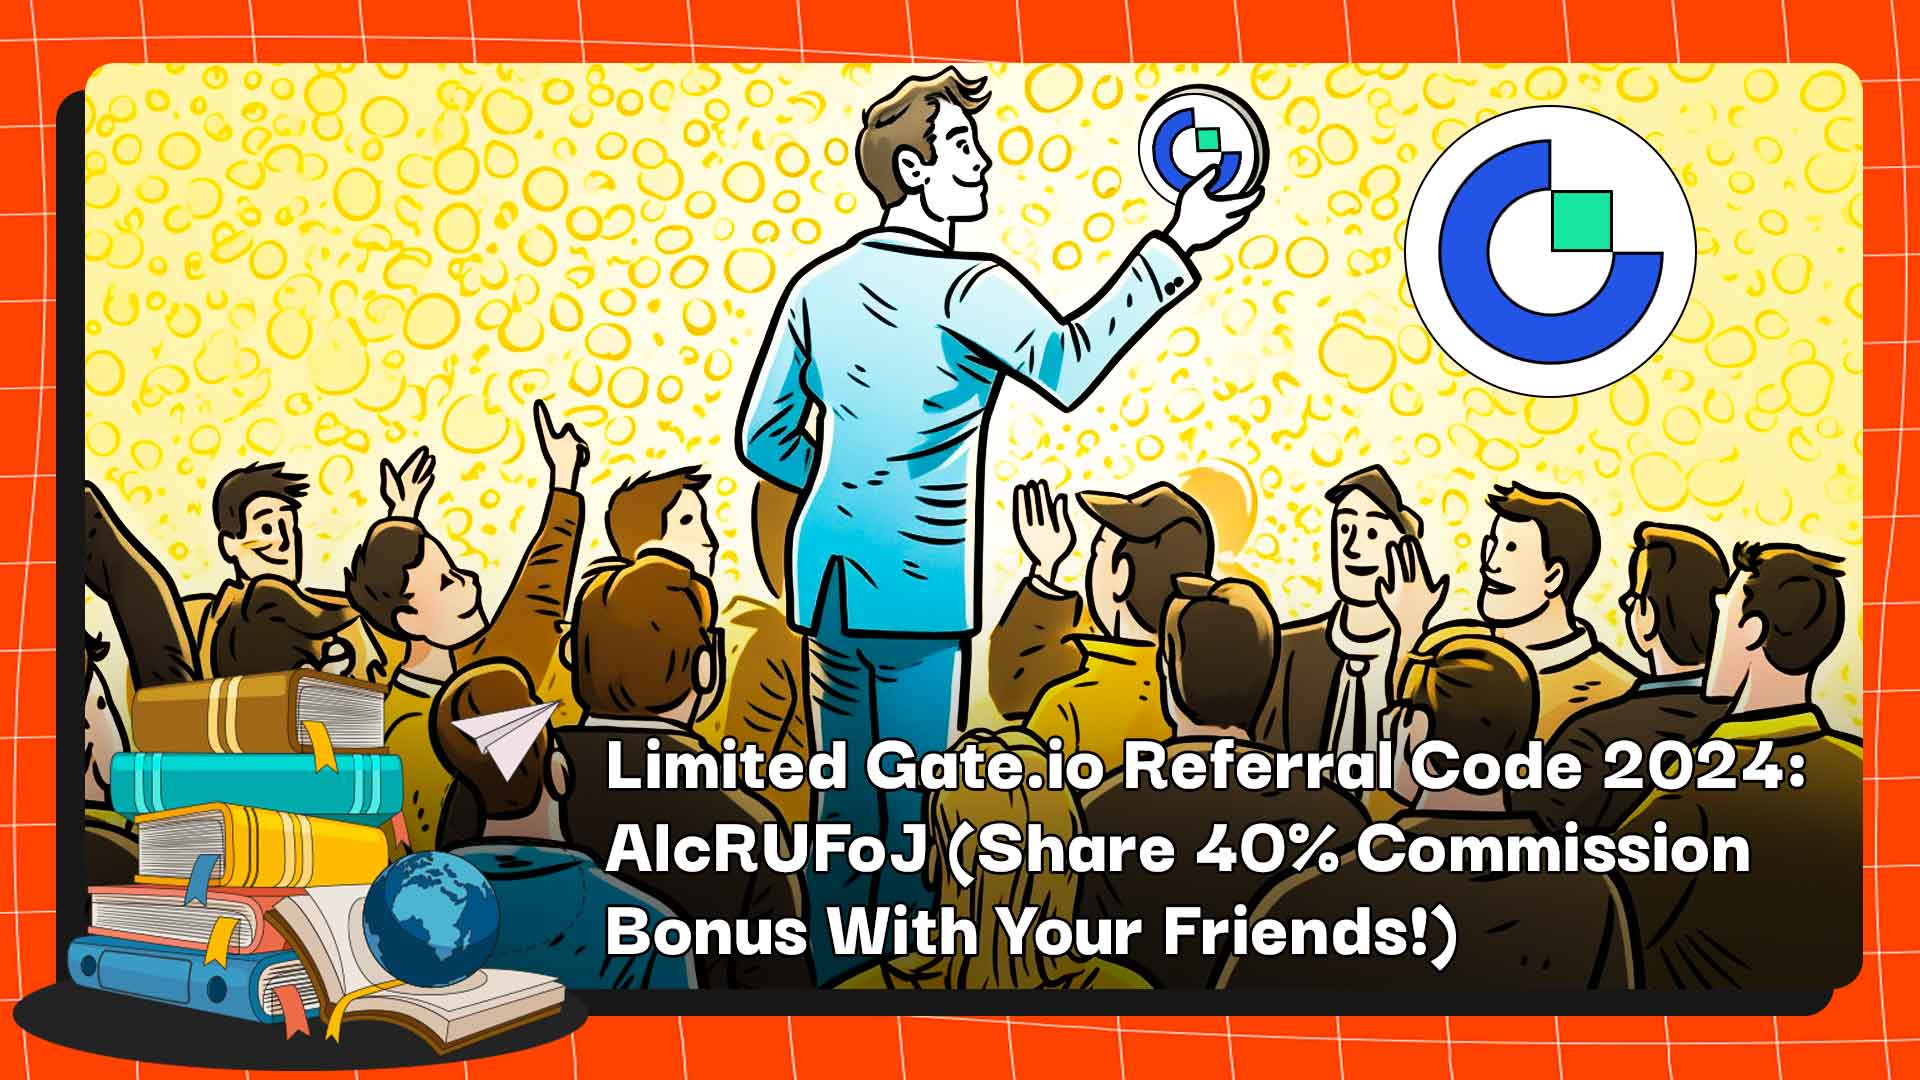 Utilisez le code de parrainage Gate.io 2024 « AlcRUFoJ » pour vous inscrire et partager jusqu'à 40 % de commission avec vos amis.